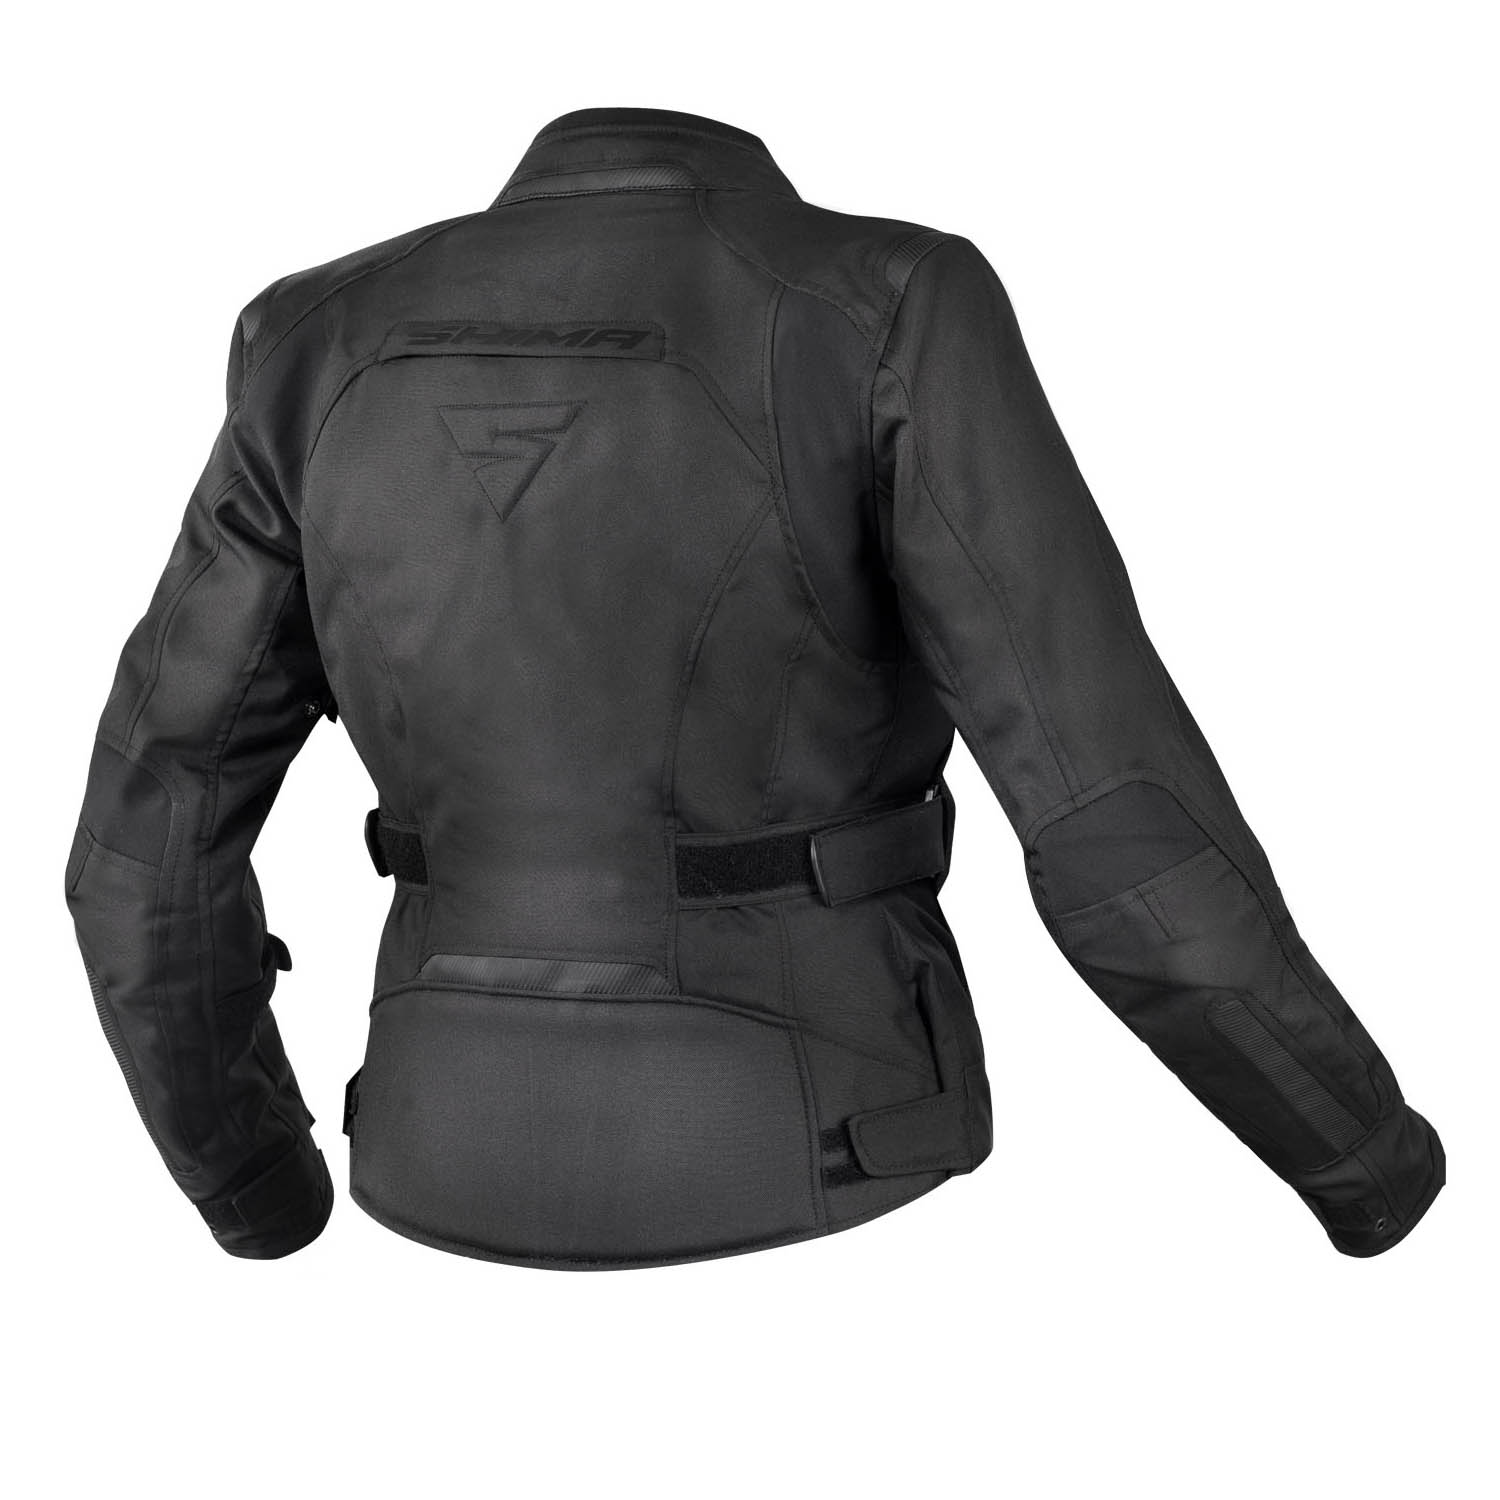 Jacheta feminin SHIMA VOLANTE чёрного цвета текстильная для мотоциклистов вид сзади купить по низкой цене